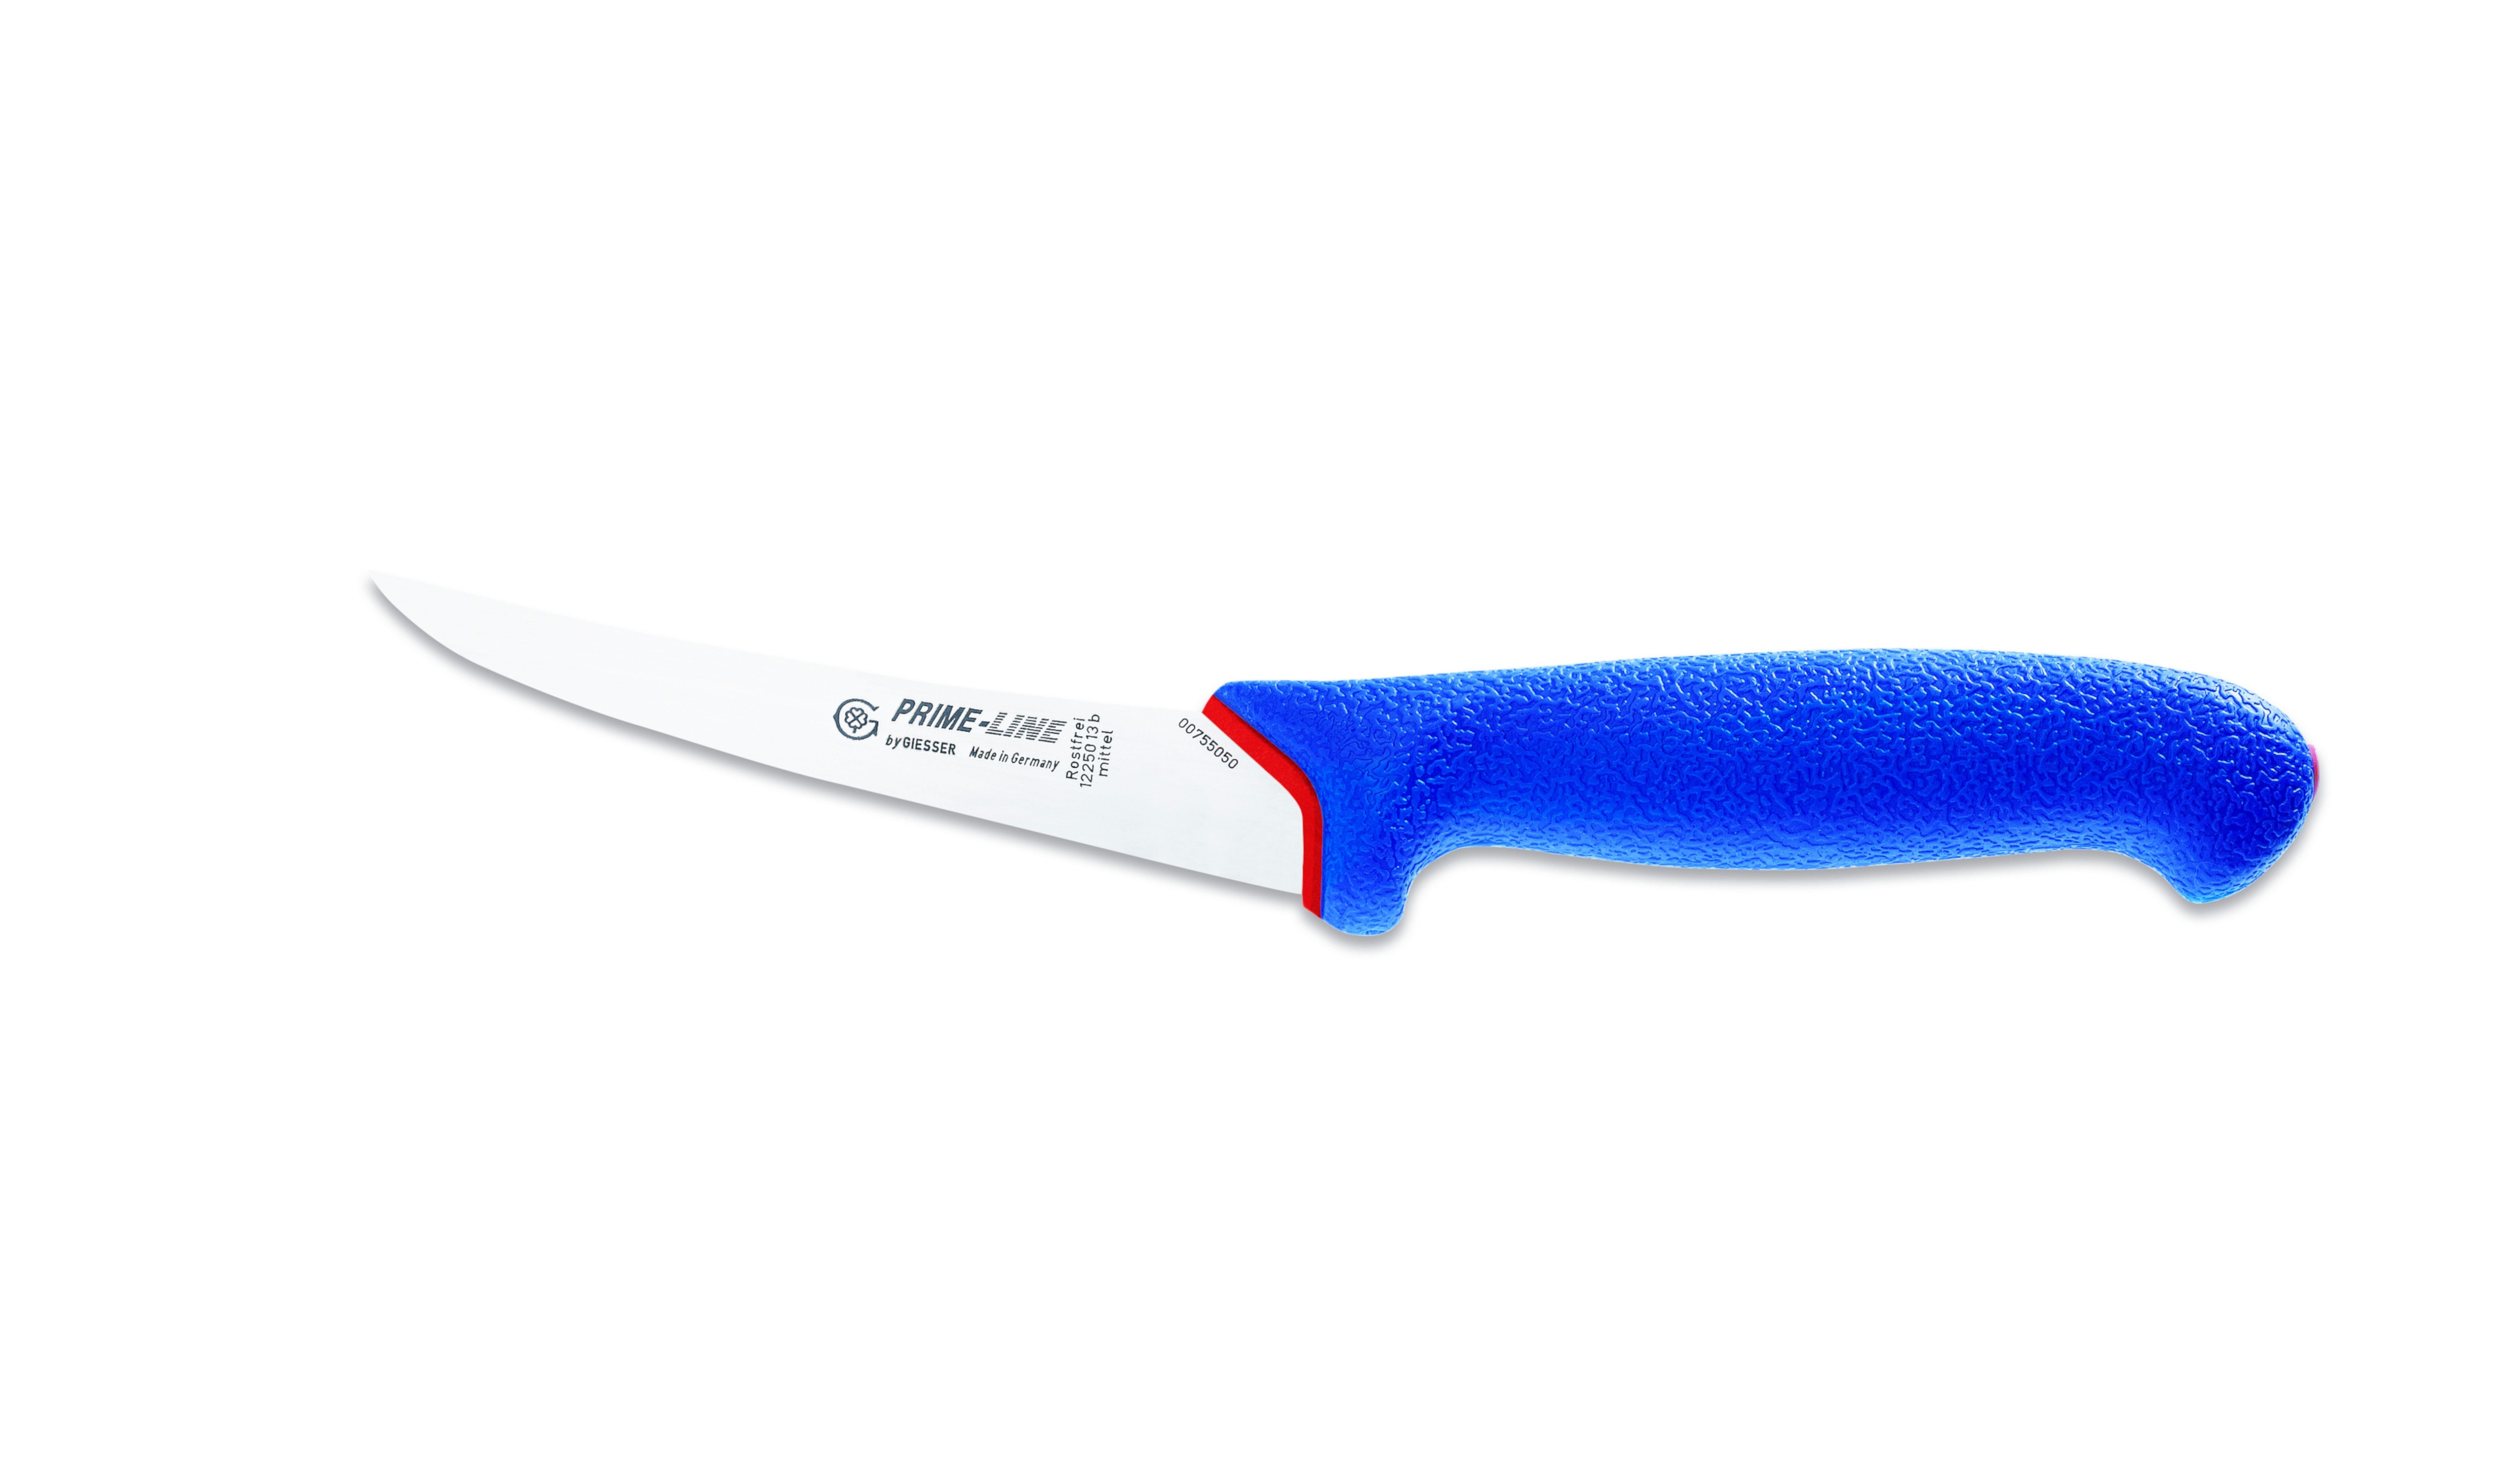 Giesser Messer Ausbeinmesser Fleischermesser 12250 13/15, PrimeLine, scharf, rutschfest, weicher Griff blau